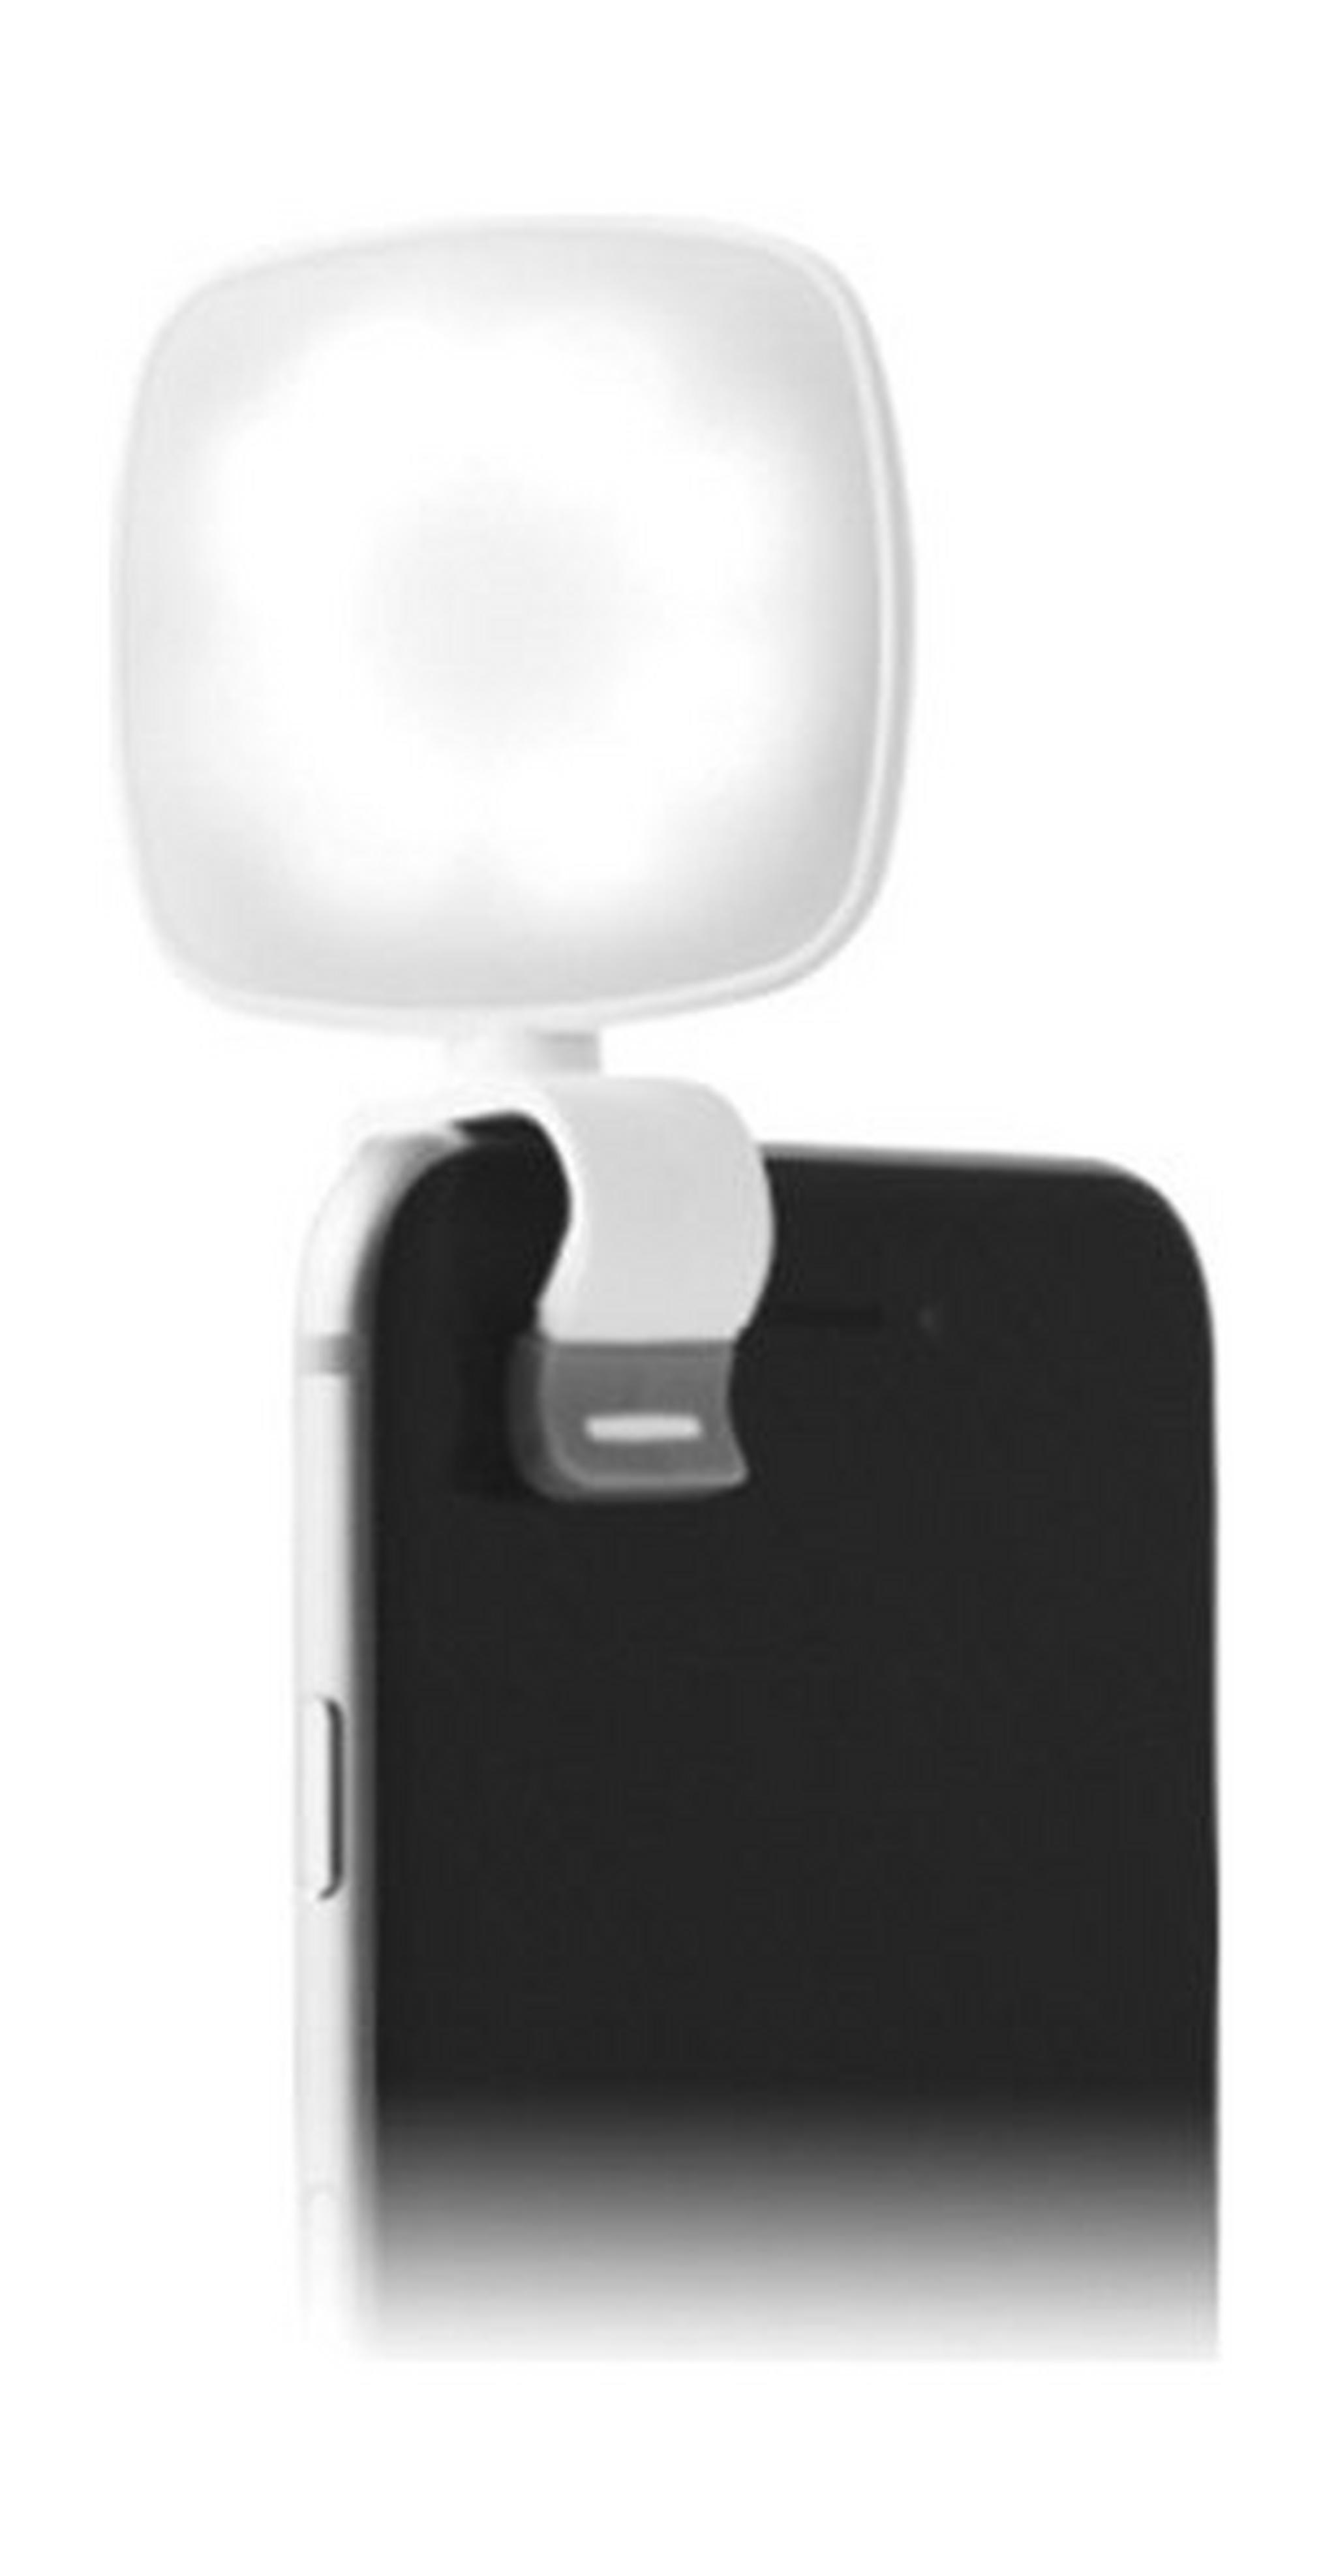 ضوء إل إي دي باور كليبرايت ميني للهواتف الذكية